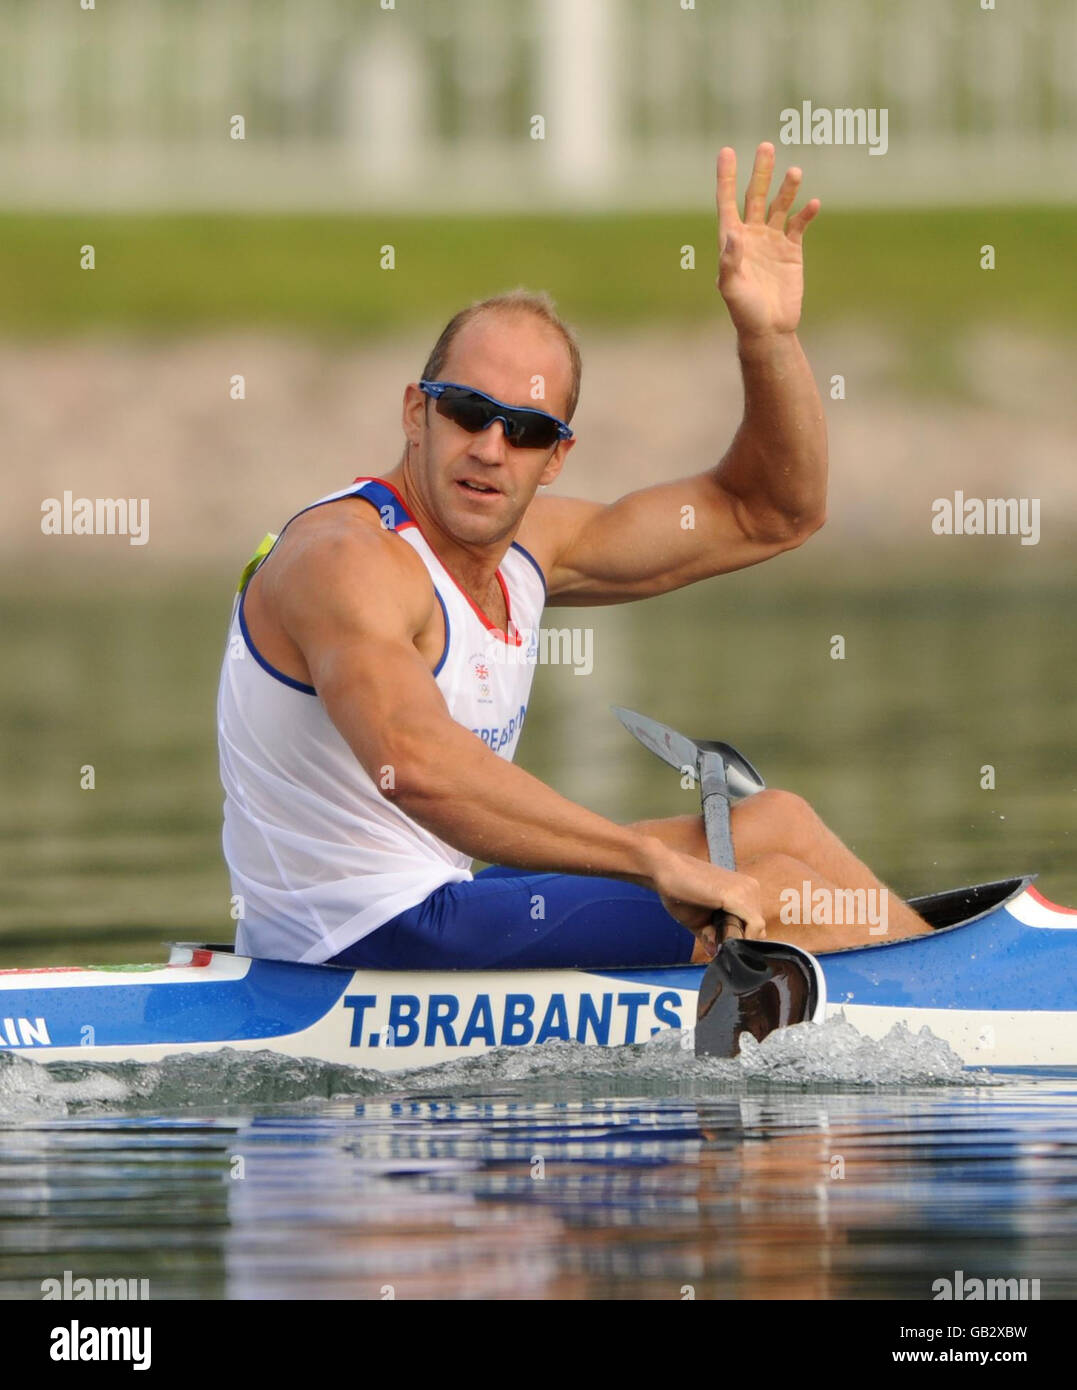 Tim Brabant, en Grande-Bretagne, après avoir gagné sa chaleur dans la monoplace des hommes (K1) 1000m chauffe au parc olympique d'aviron et de canoë-kayak de Shunyi pendant les Jeux Olympiques de 2008. Banque D'Images